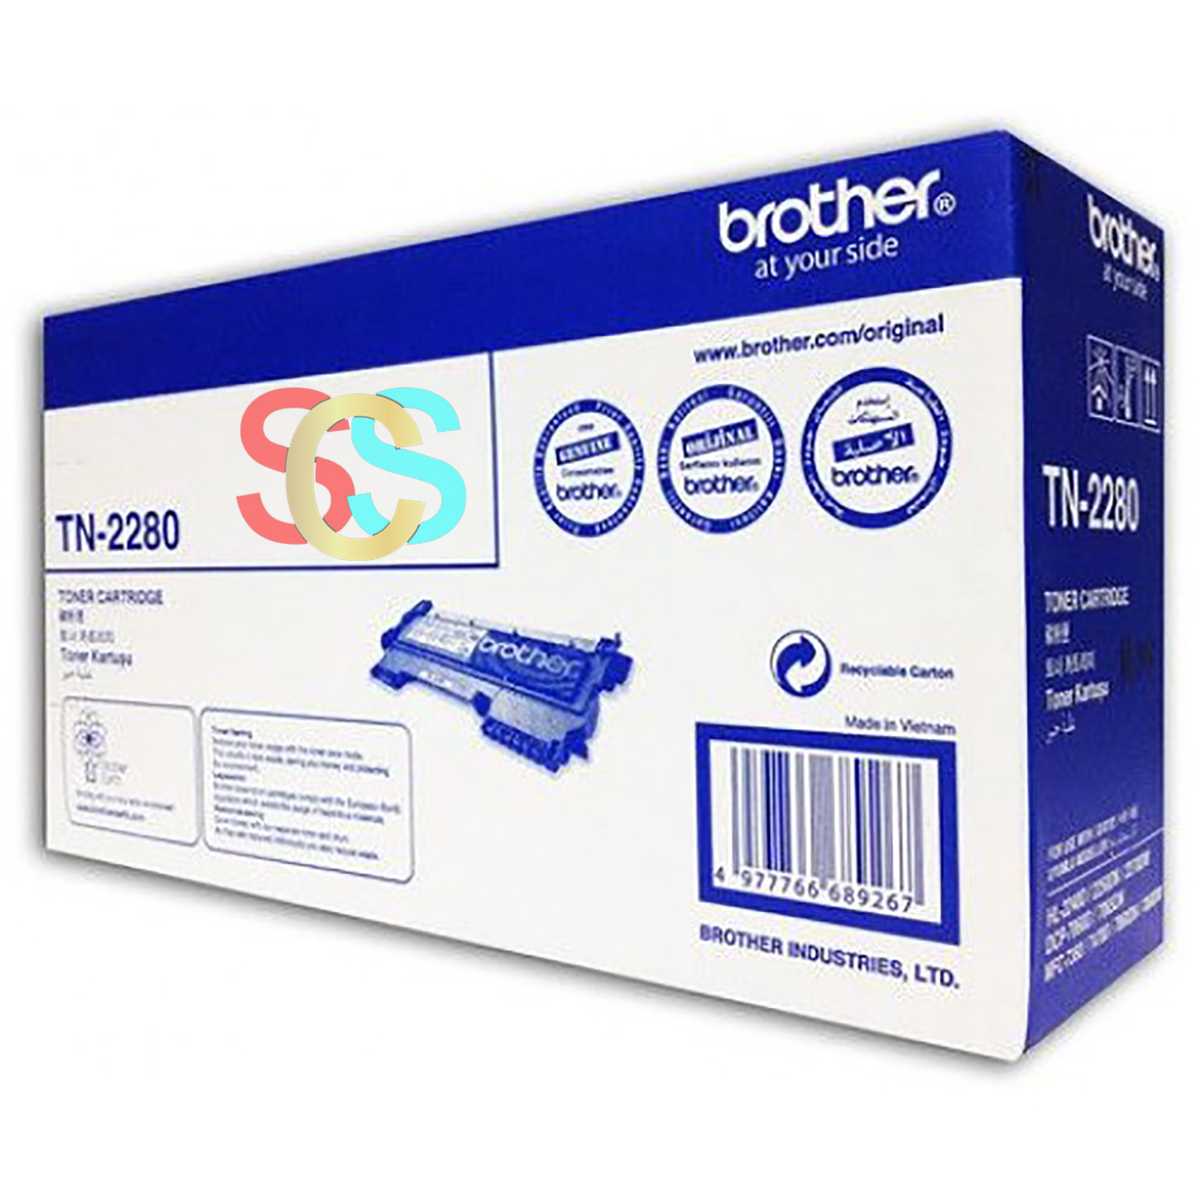 Brother TN-2280 Toner r & Fax Machine